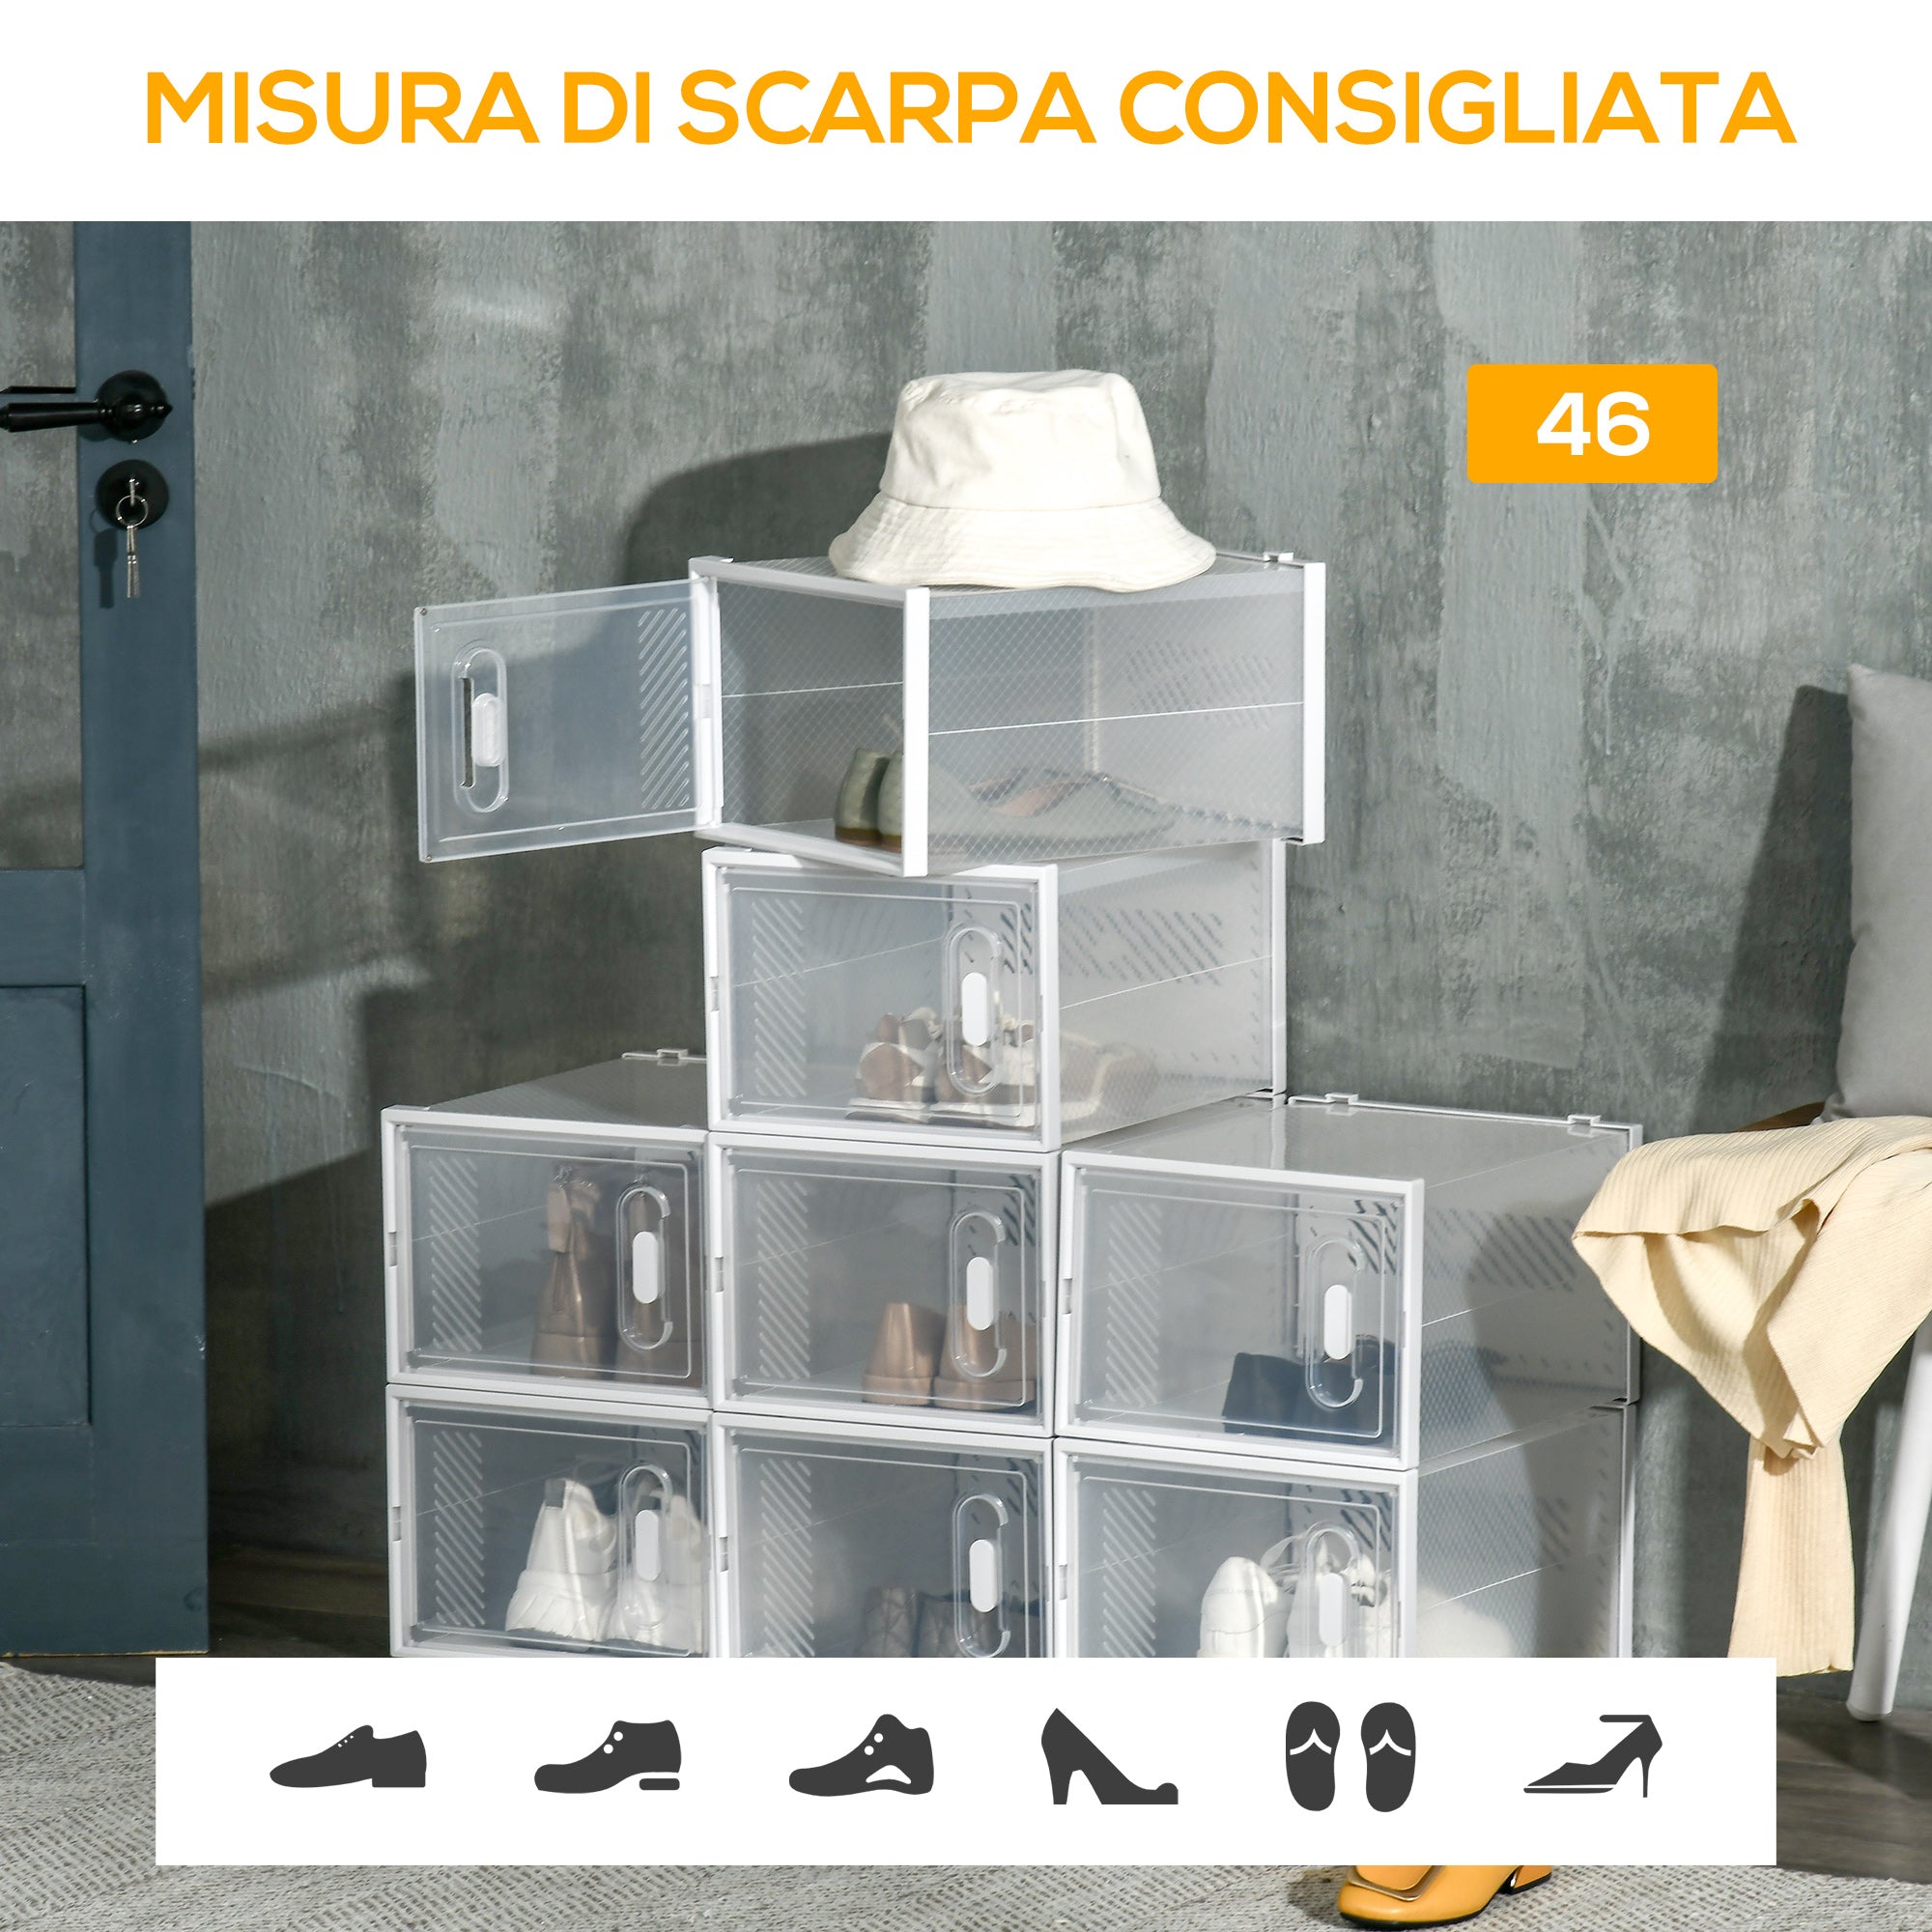 EASYCOMFORT Mobile Scarpiera Rettangolare in Plastica PP, 18 Box 25x35x19  cm per Scarpe max 43 EU, Vestiti e Libri